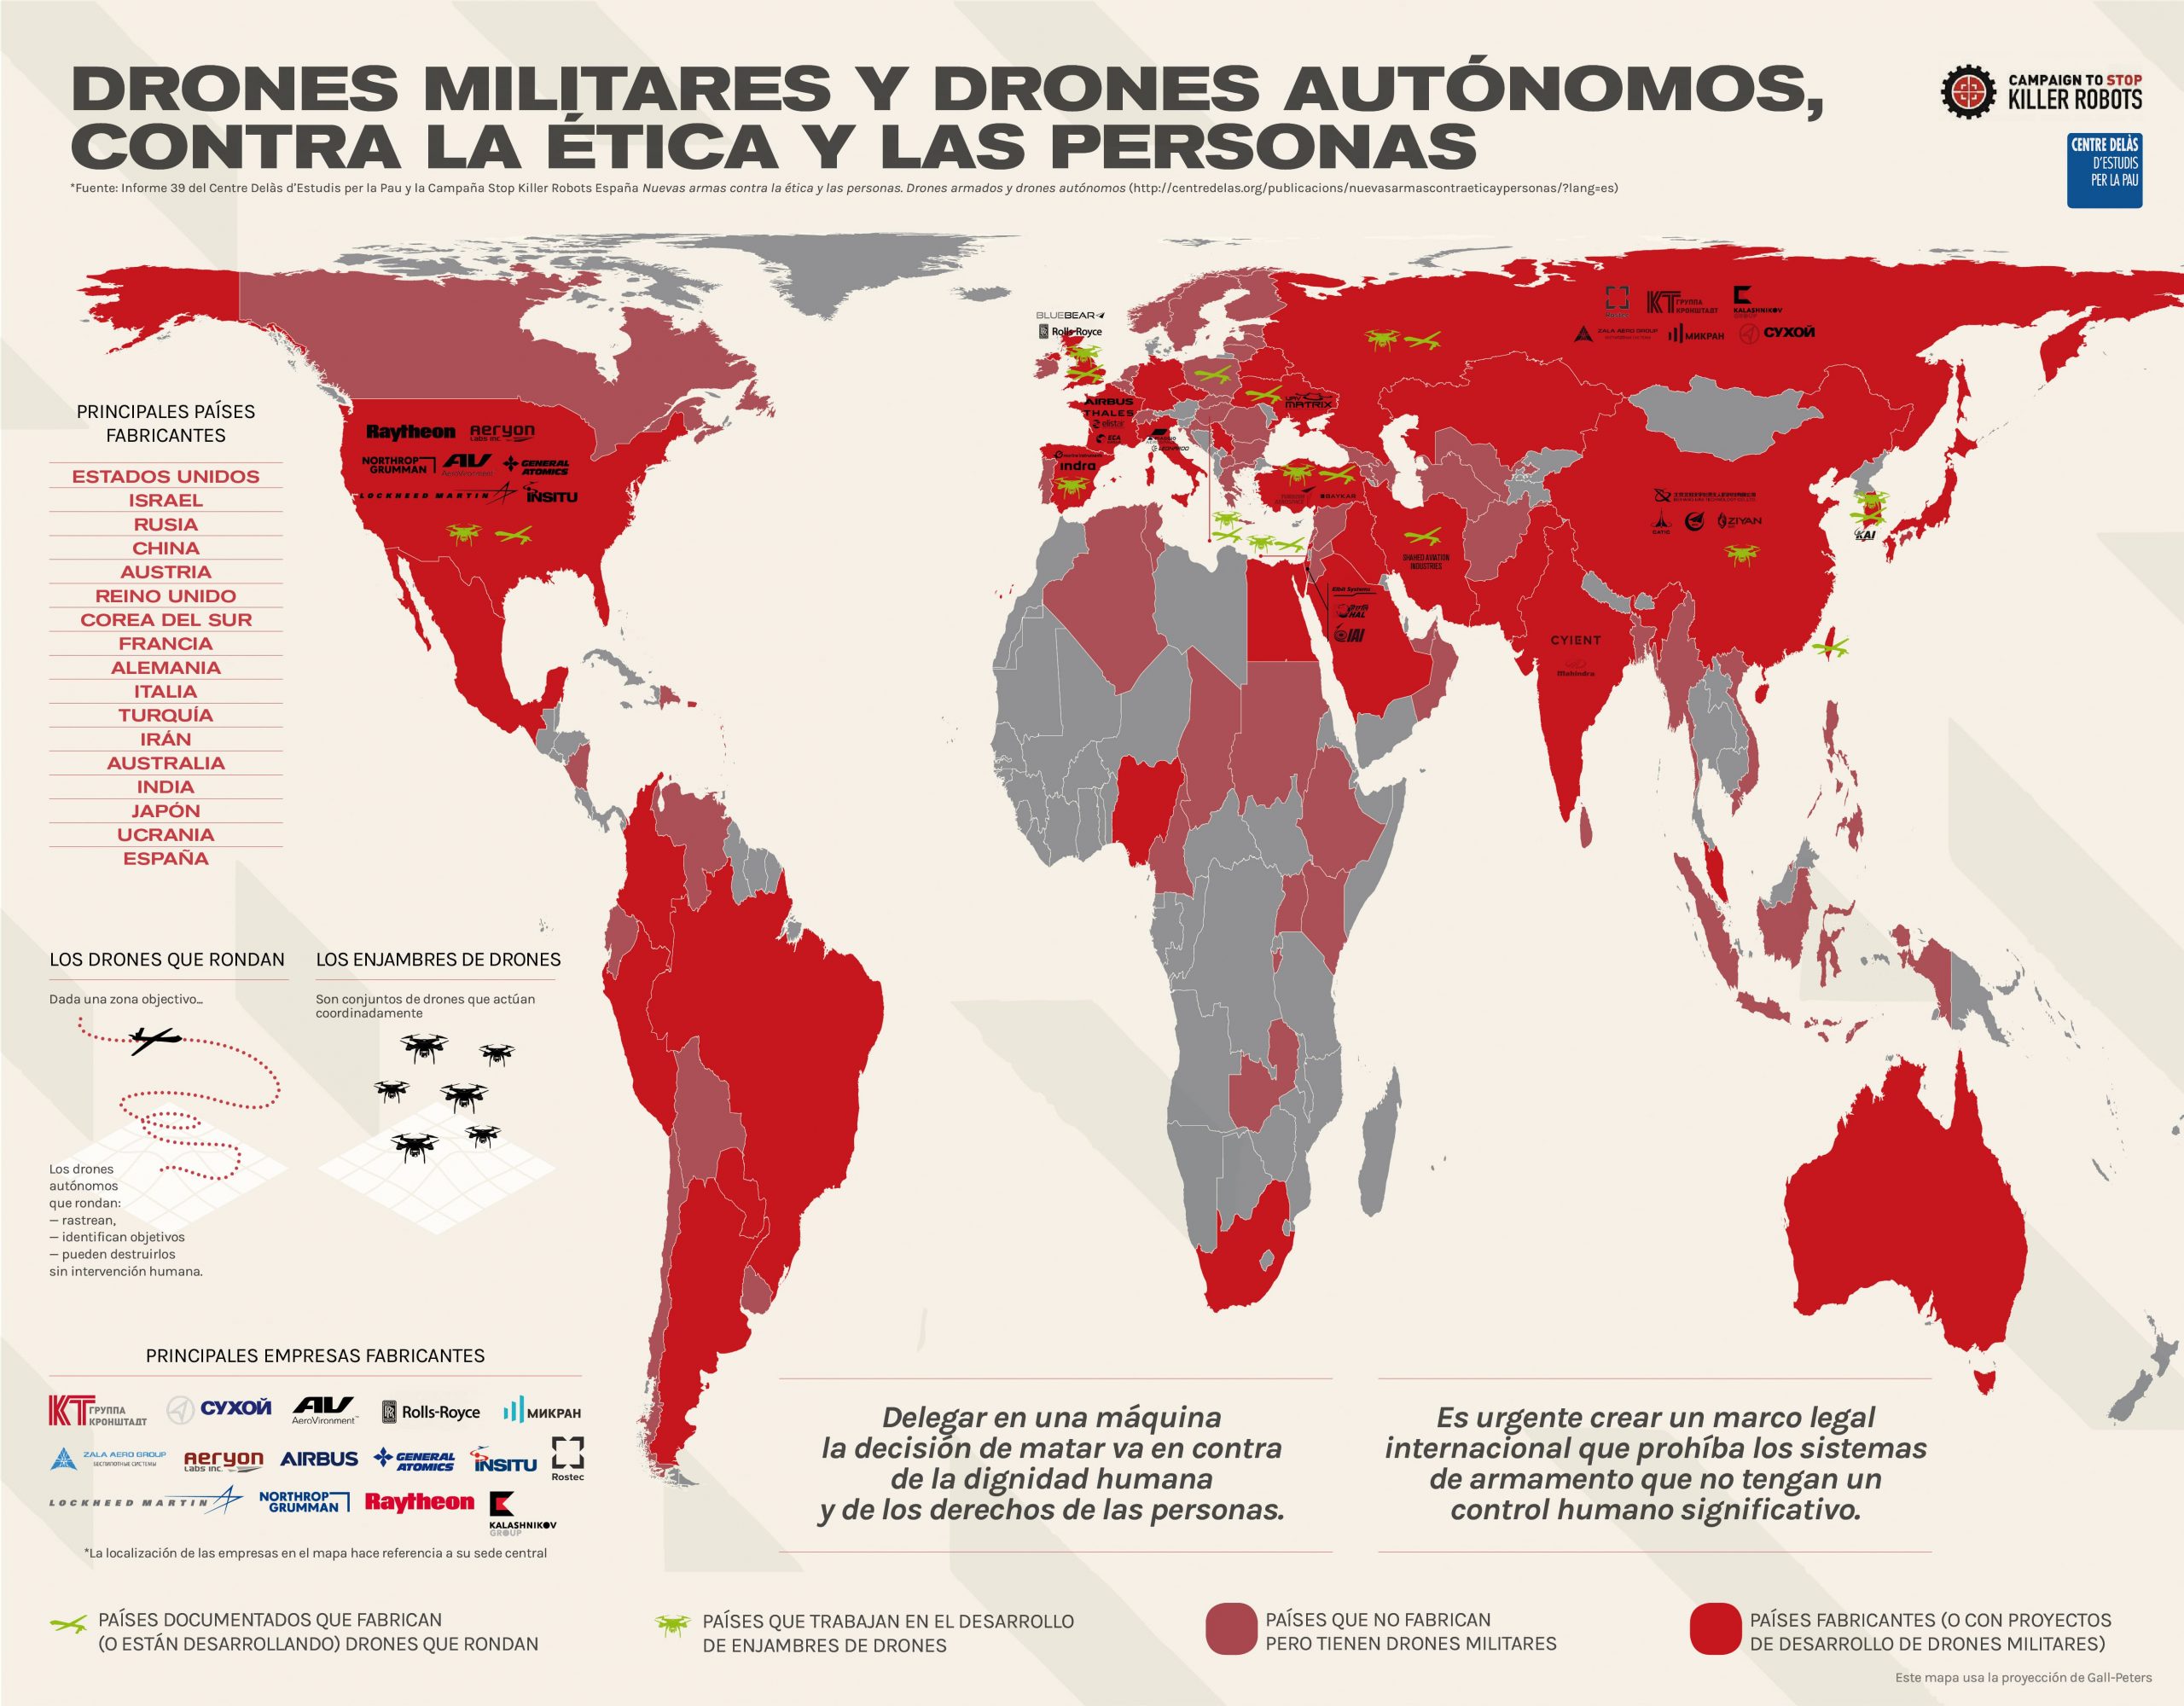 Infografia del Centre Delàs i la Campanya Stop Killer Robots: “Drones militares y drones autónomos. Contra la ética y las personas”